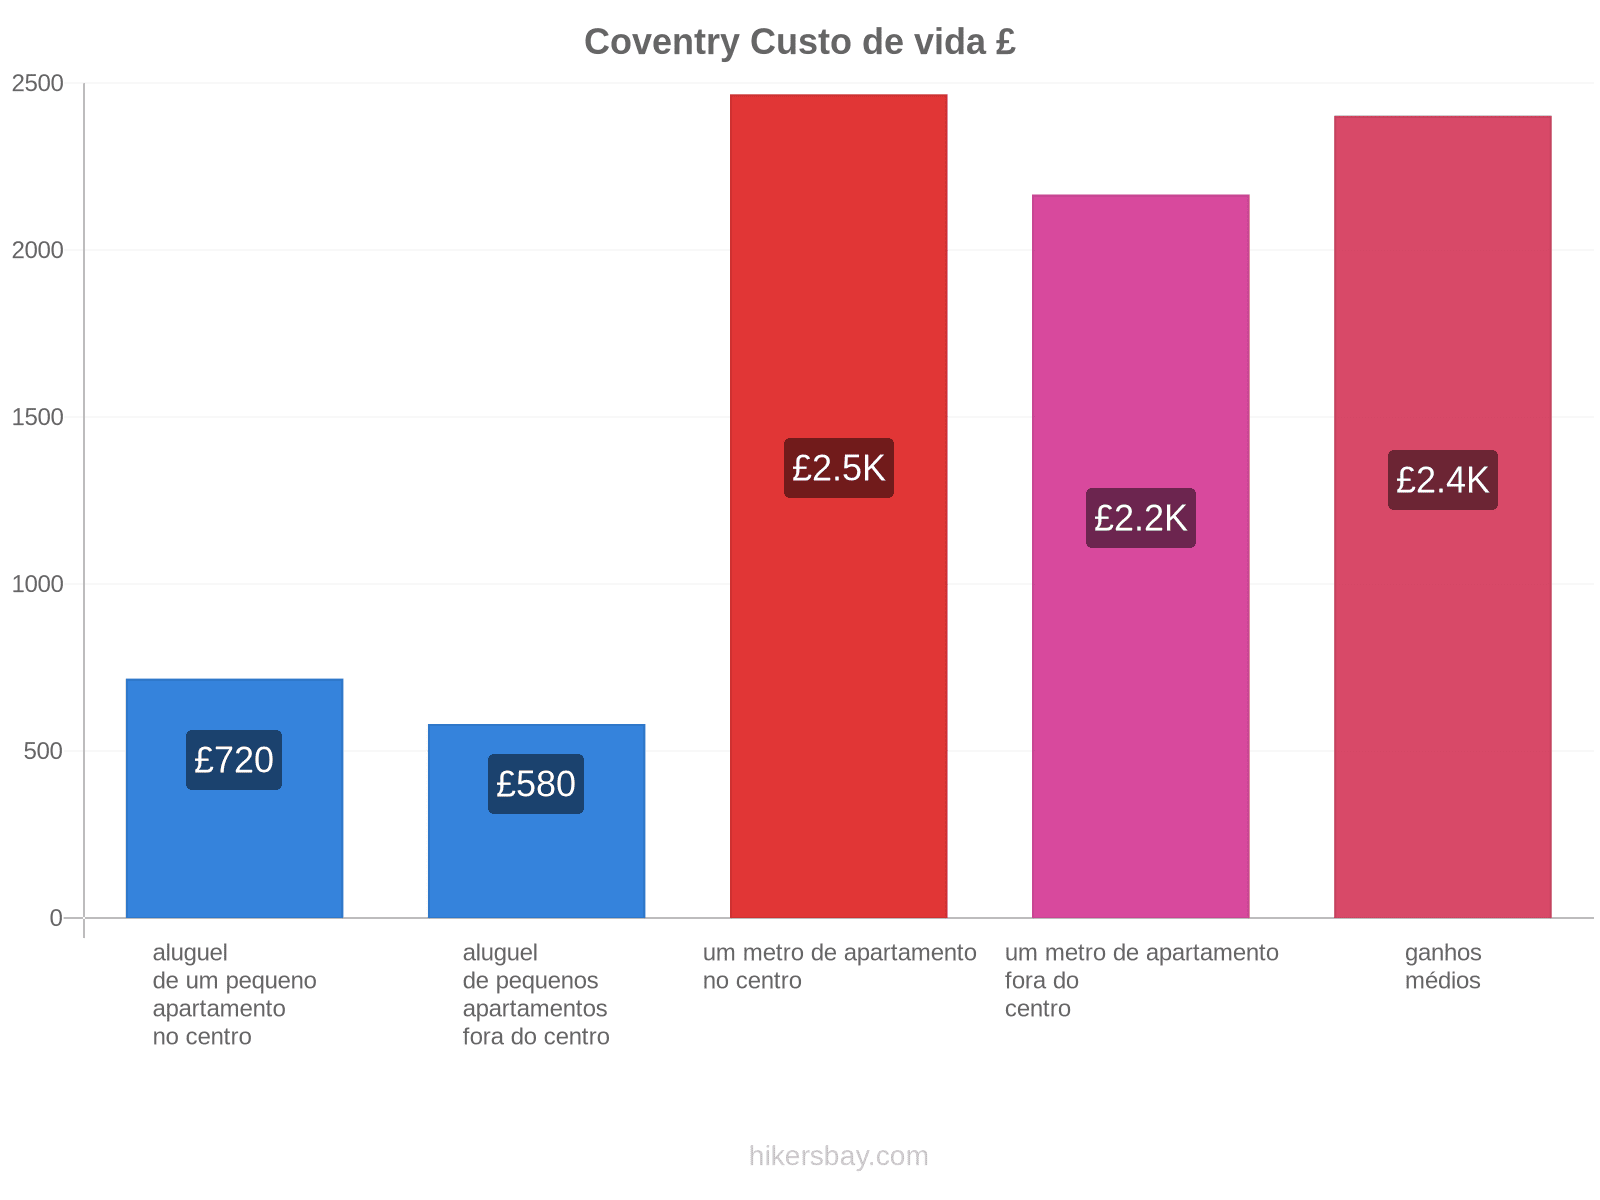 Coventry custo de vida hikersbay.com